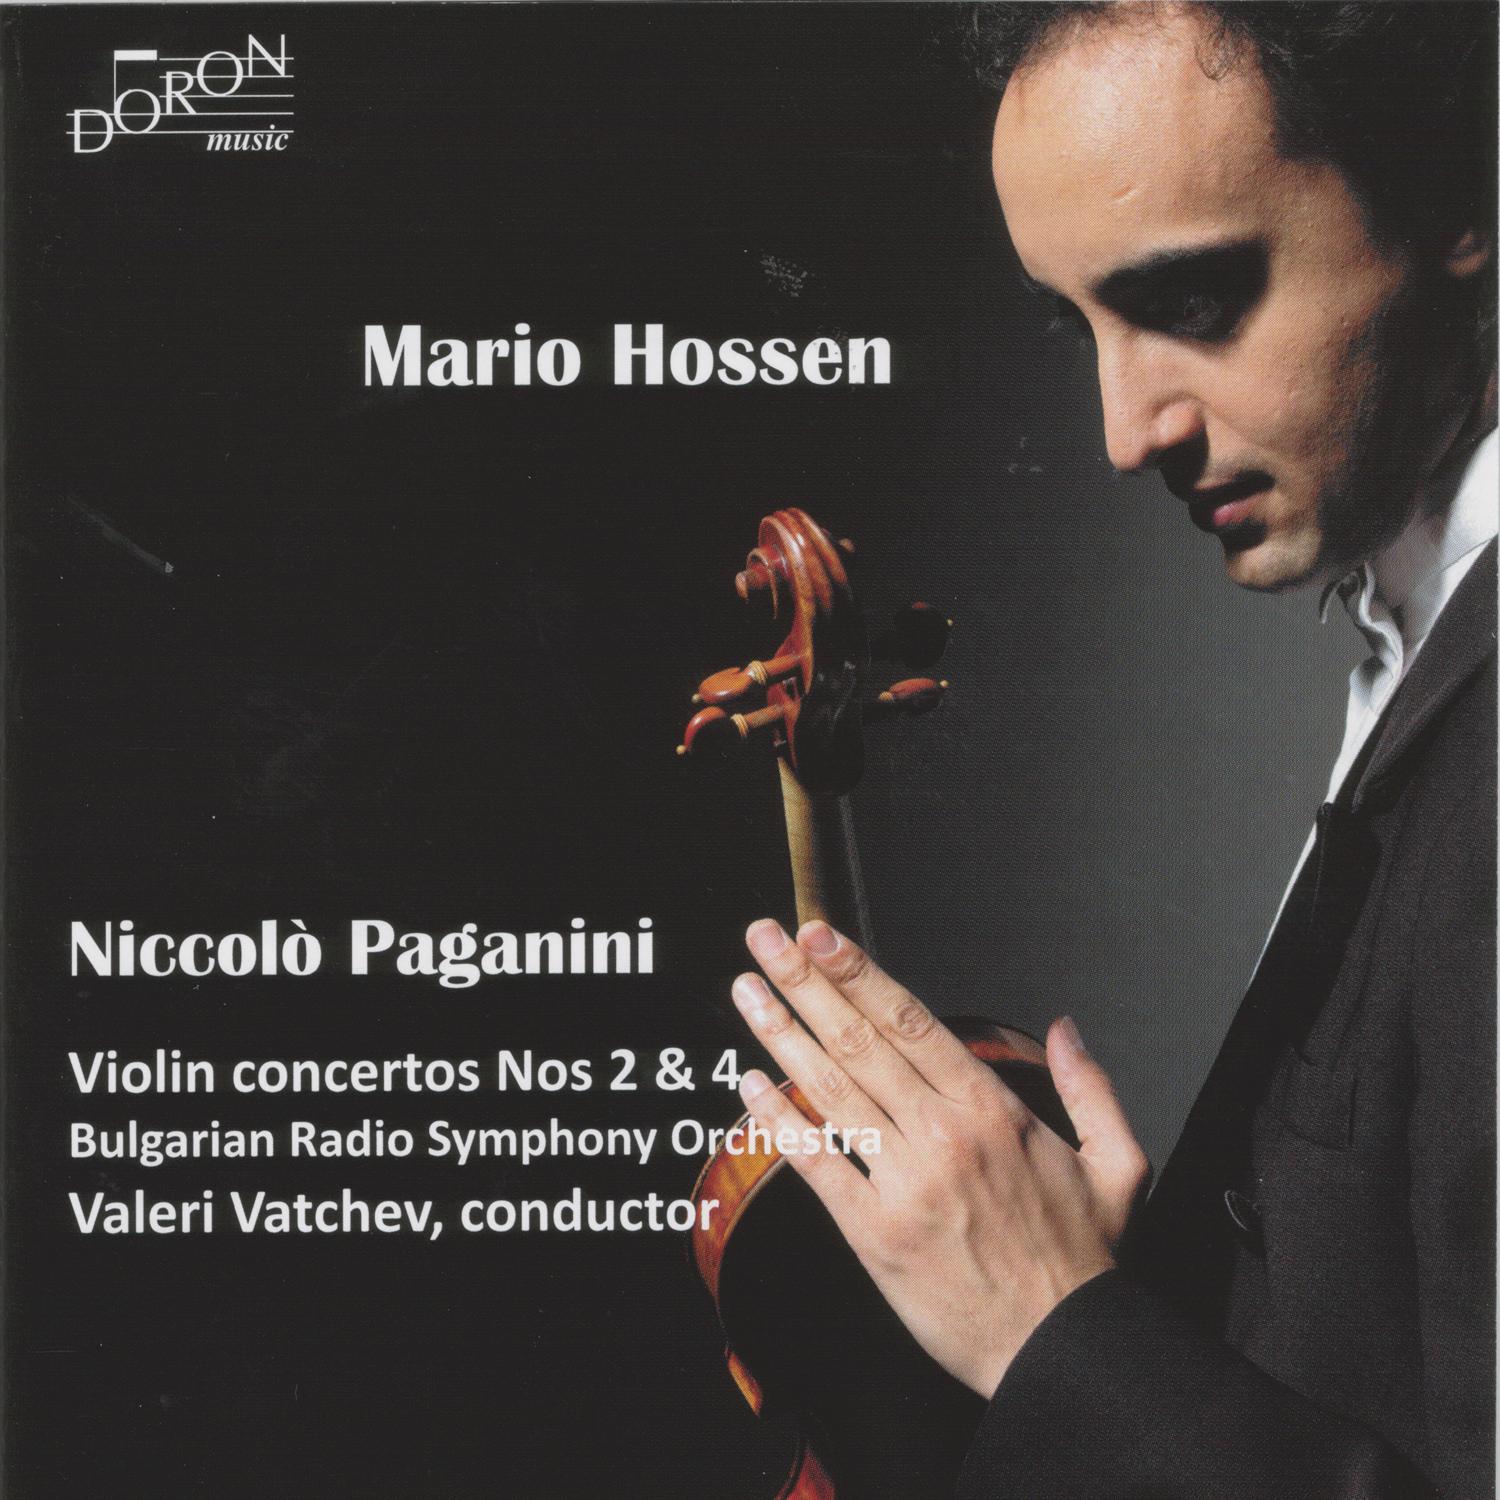 Violin Concerto No. 4 in D Minor: I. Allegro maestoso